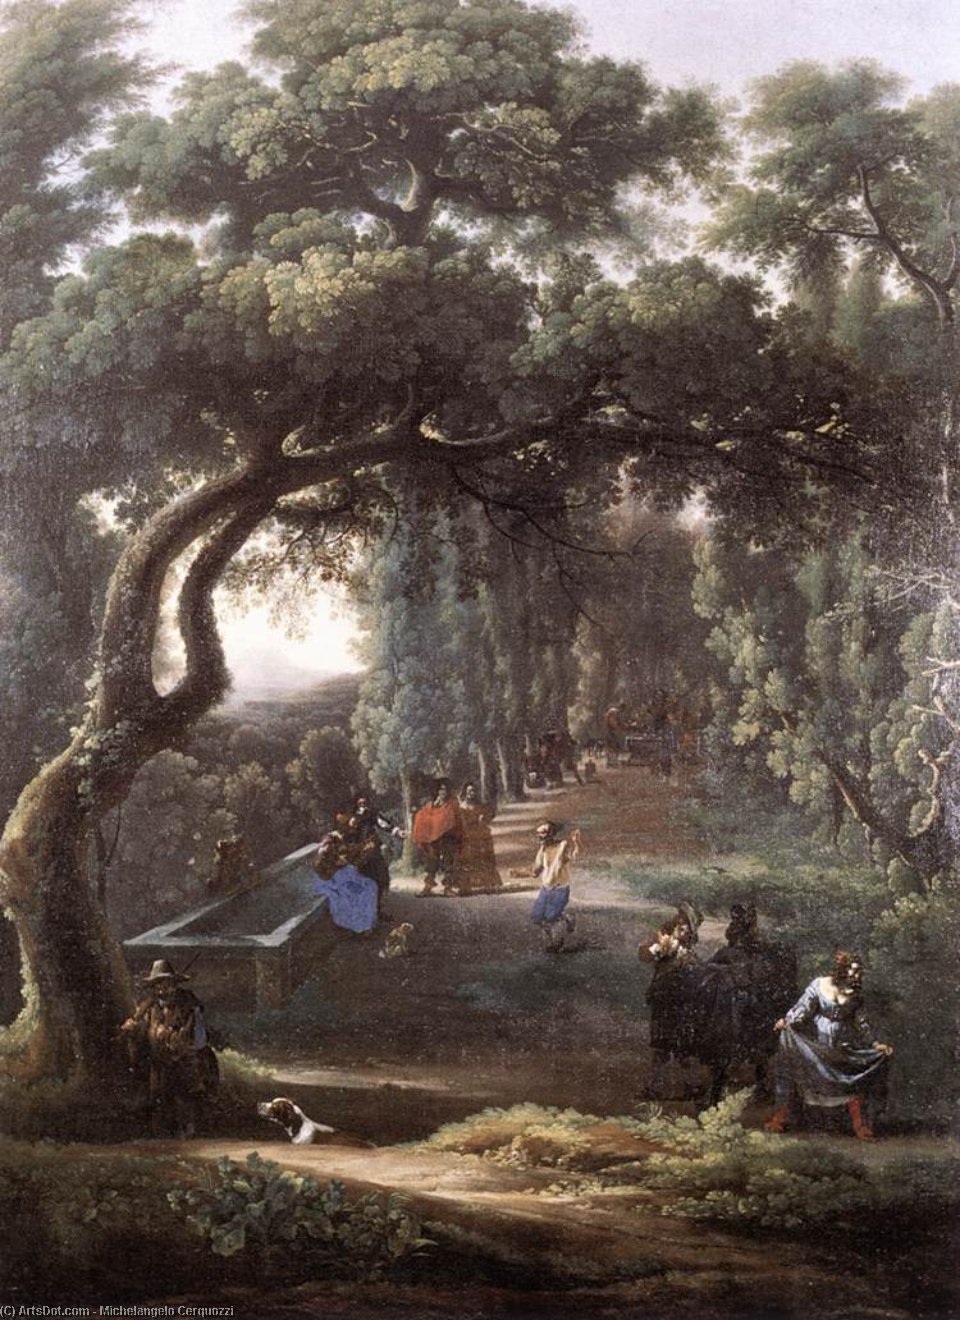 WikiOO.org - Enciklopedija likovnih umjetnosti - Slikarstvo, umjetnička djela Michelangelo Cerquozzi - Figures in a Tree-lined Avenue